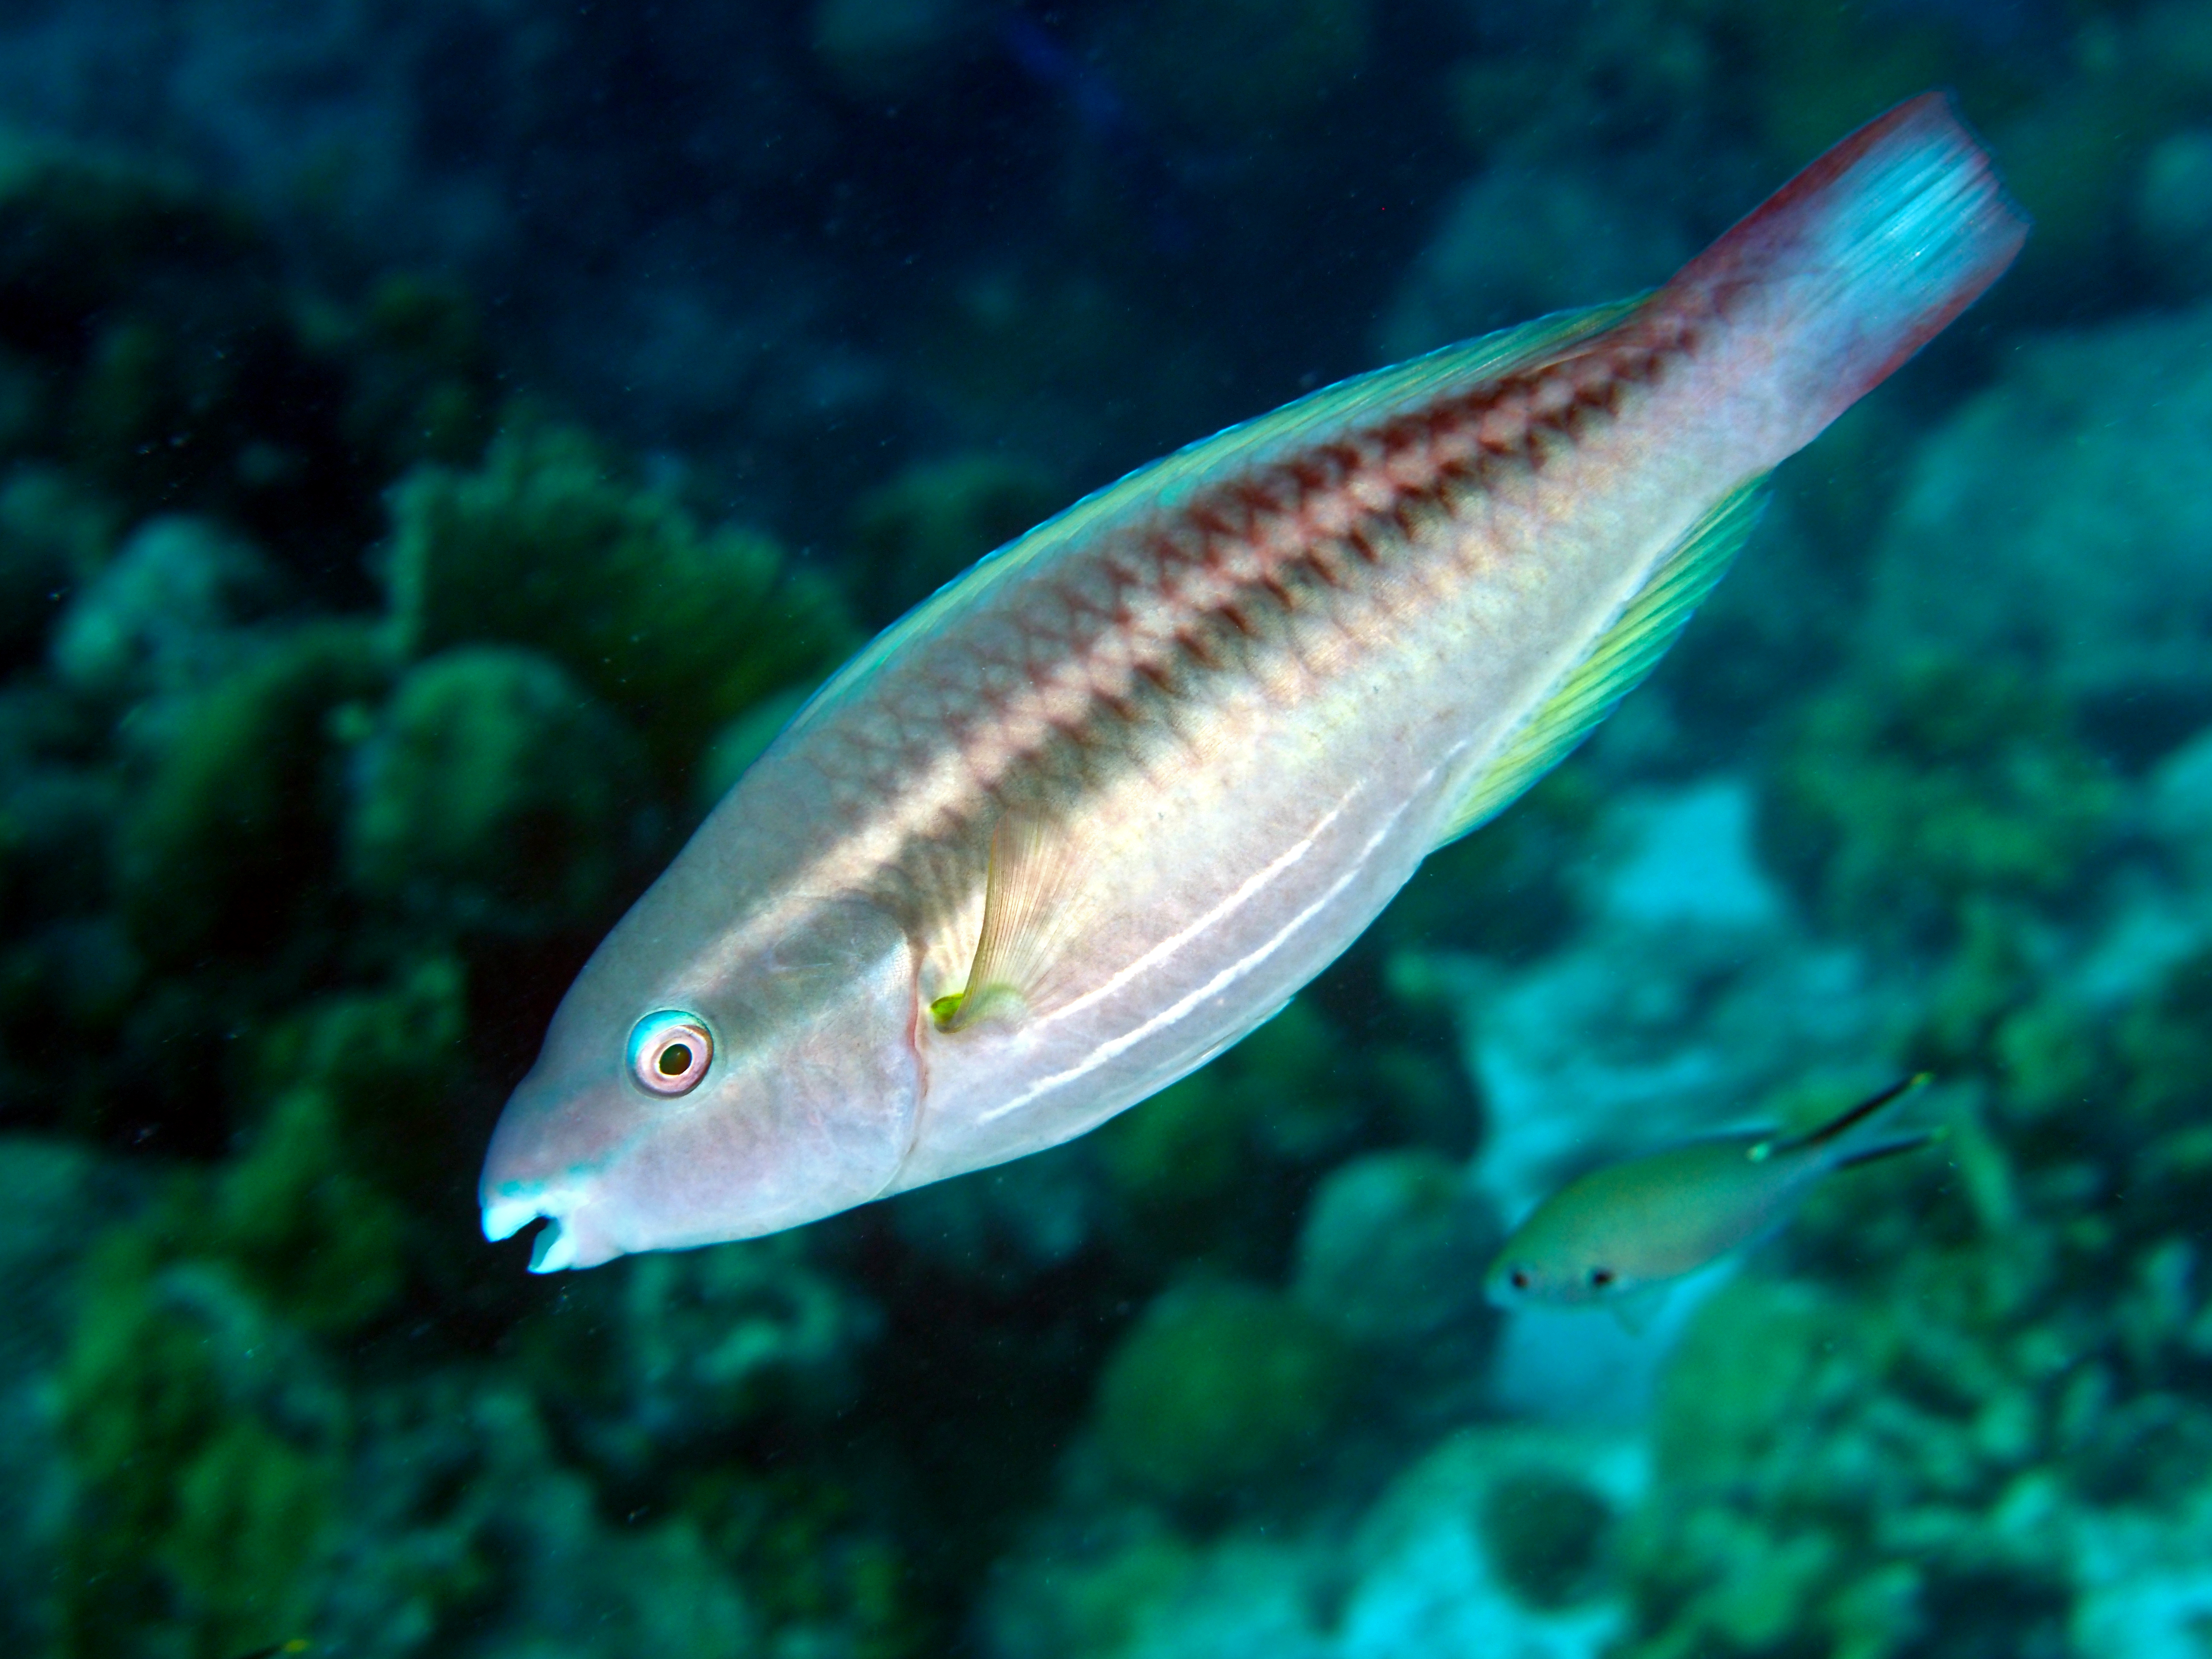 Princess Parrotfish - Scarus taeniopterus